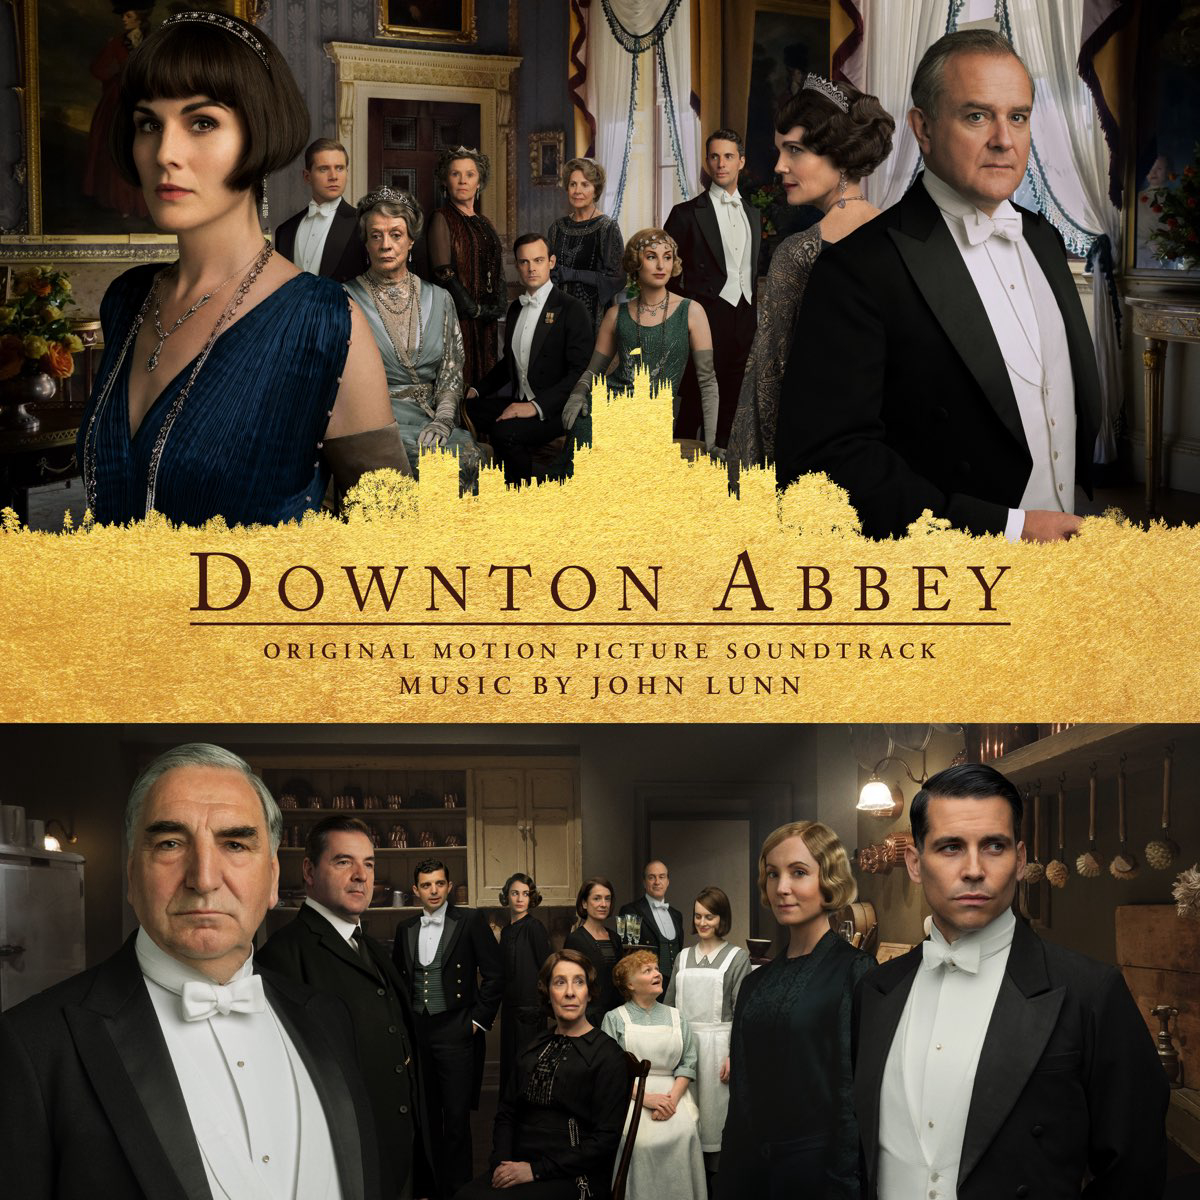 Banner Phim Kiệt Tác Kinh Điển: Downton Abbey (Downton Abbey)